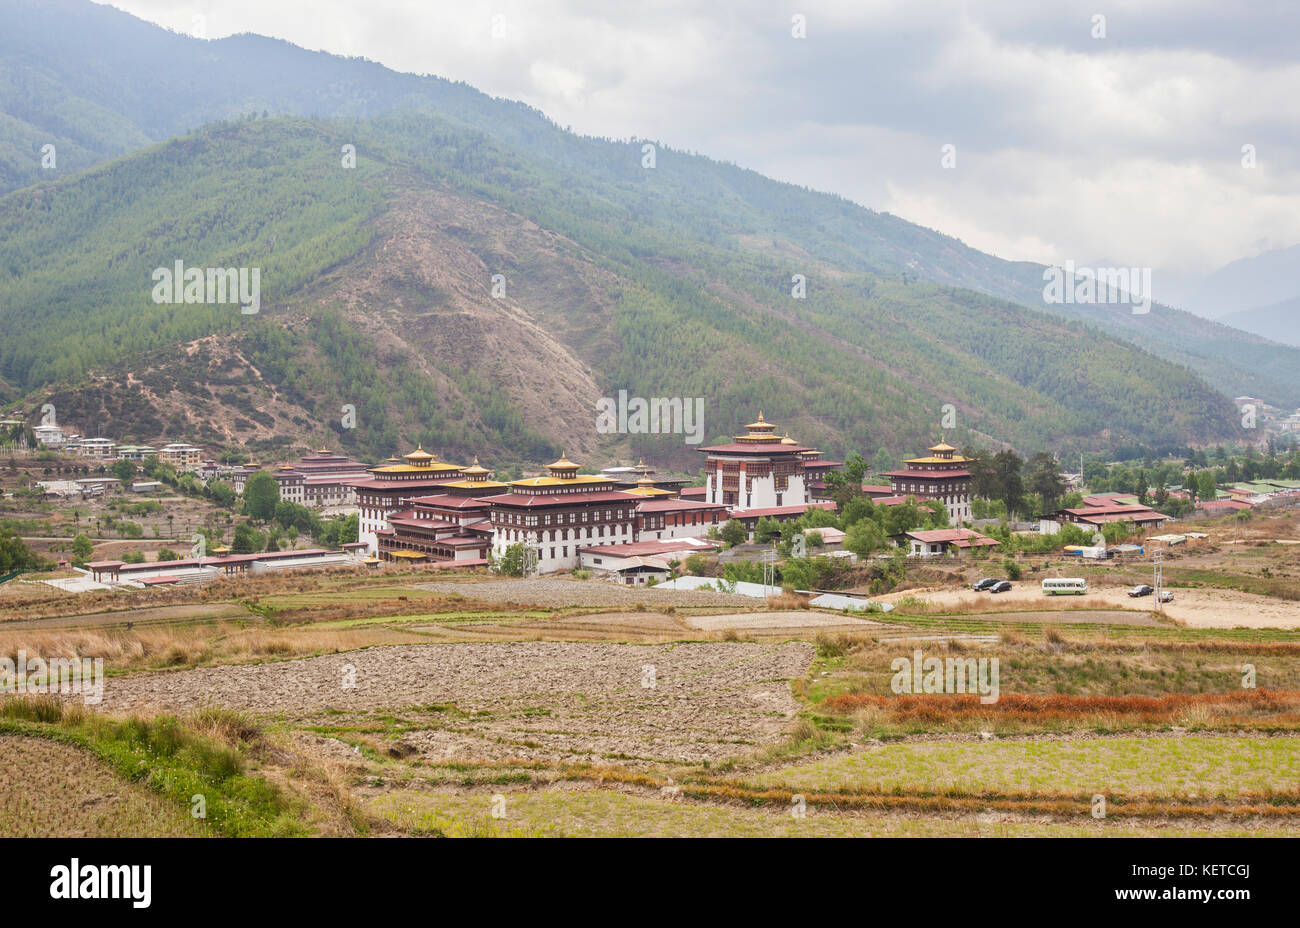 Typische Architektur der heiligen buddhistischen Kloster in das grüne Tal von Thimphu Bhutan Asien Stockfoto